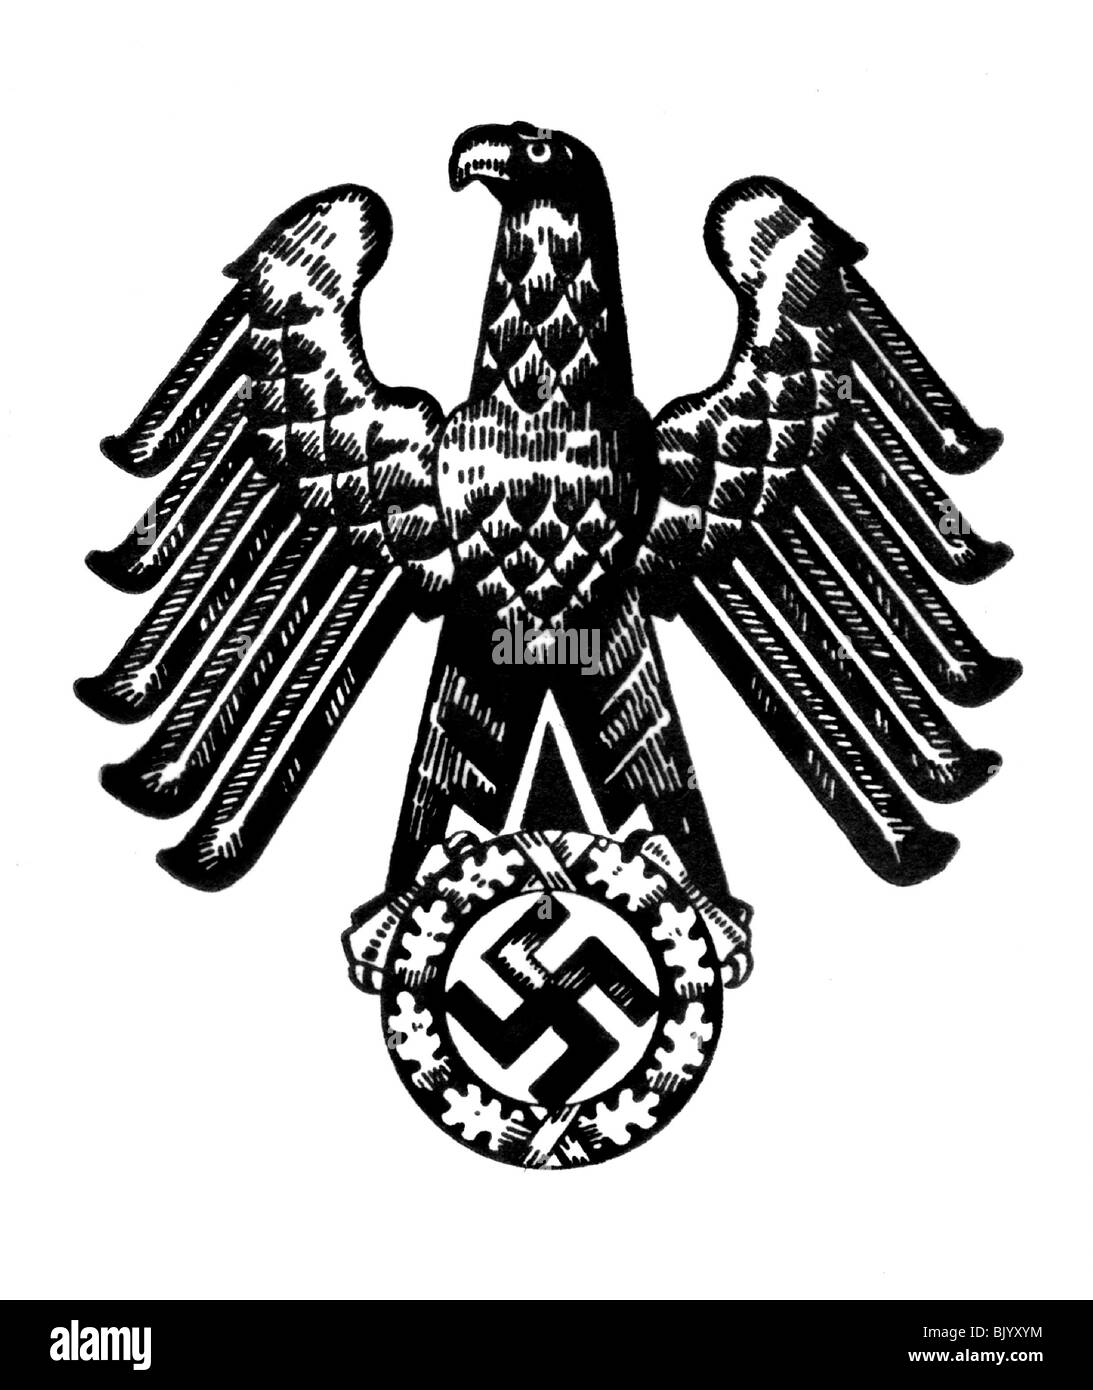 águila imperial alemana Imágenes de stock en blanco y negro - Alamy